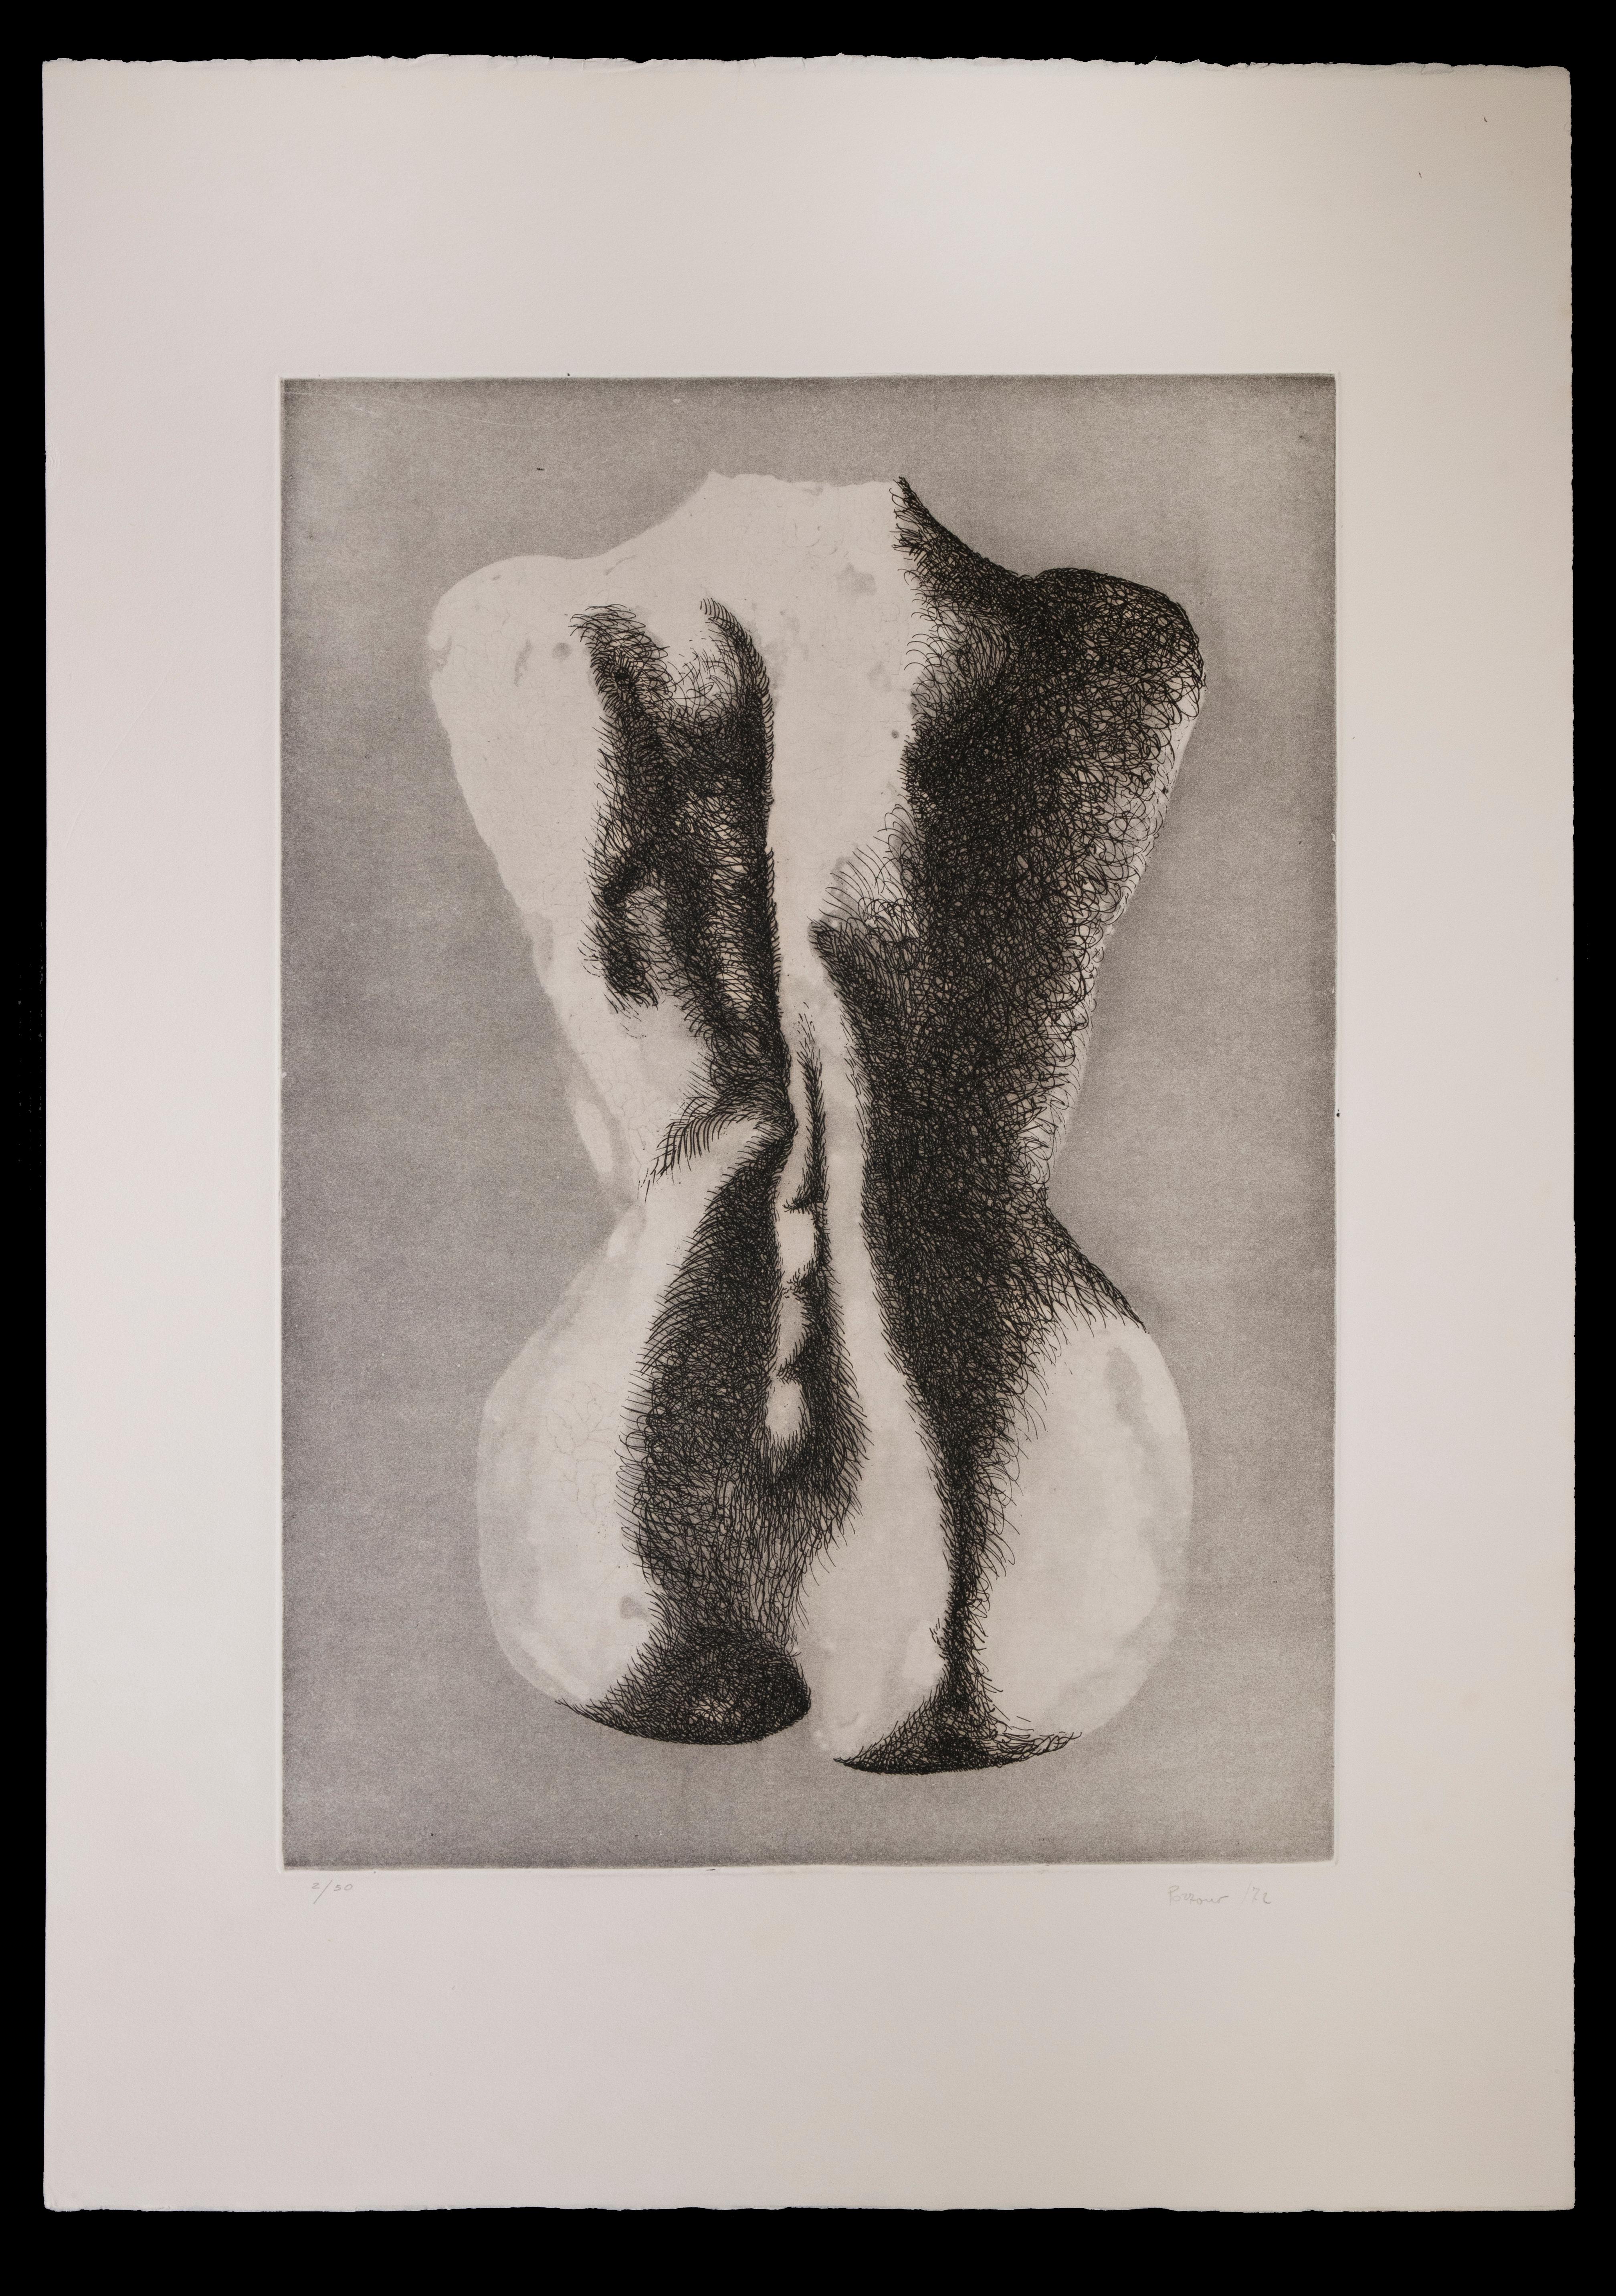 Woman from the Back ist eine Radierung auf Papier, die von dem italienischen Künstler Giacomo Porzano (1925-2006) realisiert wurde.

Rechts unten handsigniert.

Links unten nummeriert. Auflage: 50 Stück.

Dieses zeitgenössische Werk stellt den